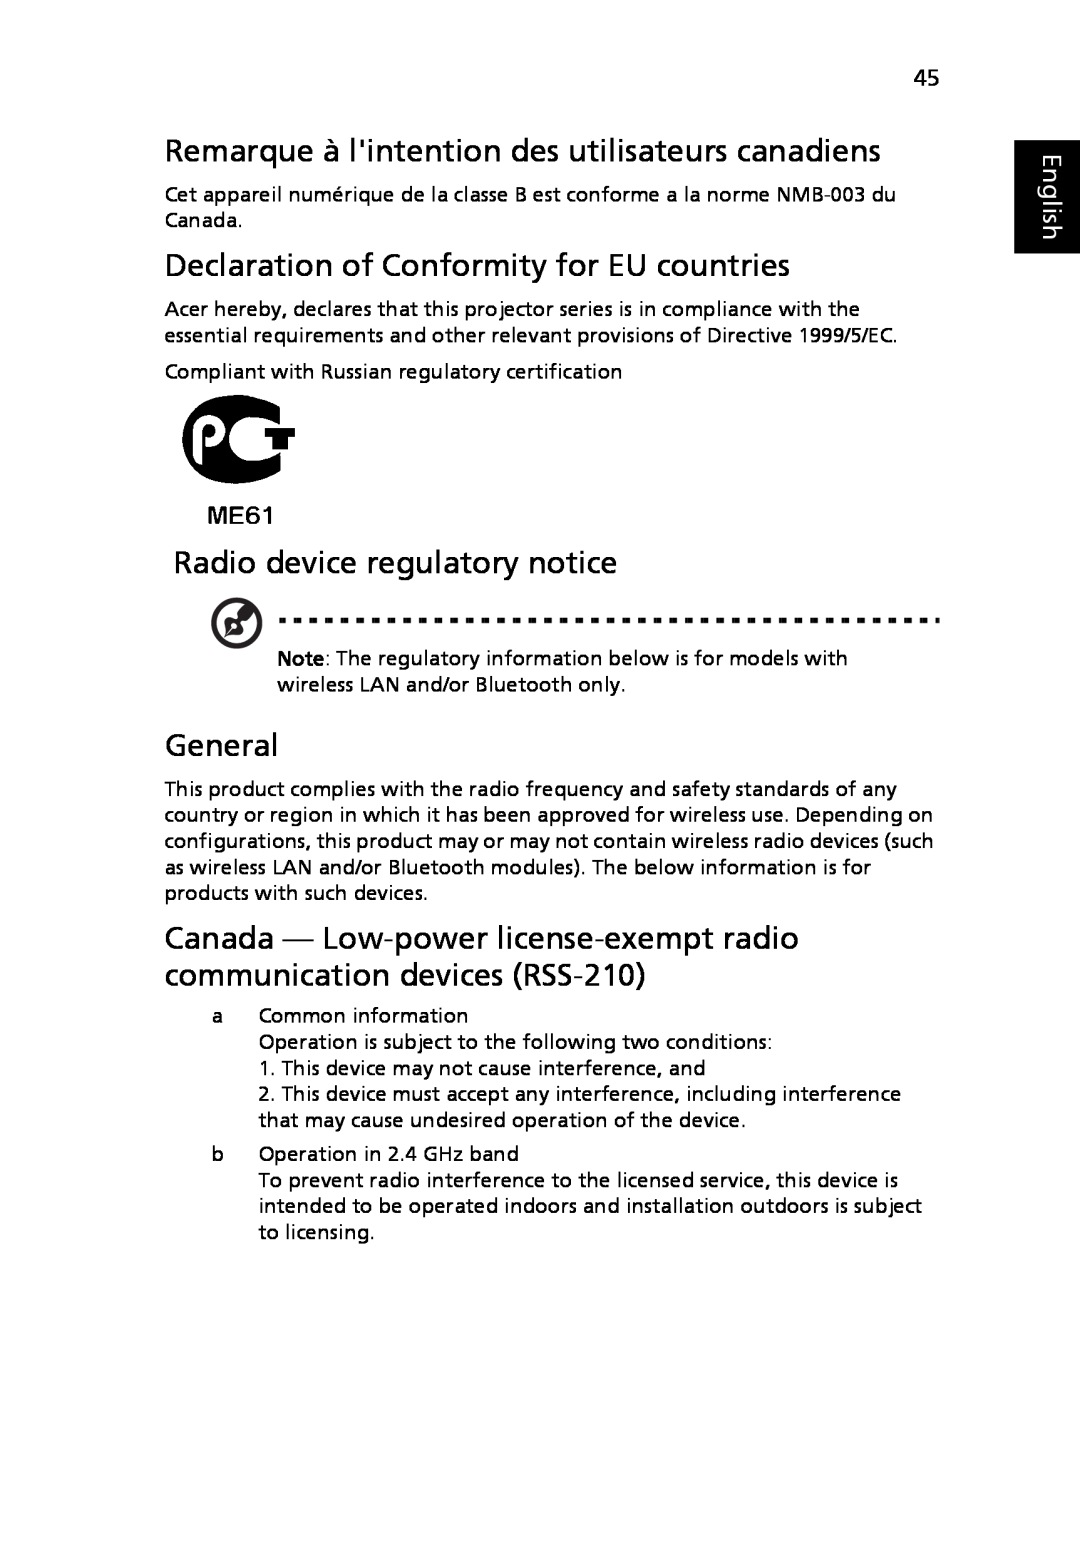 Acer P5205 Remarque à lintention des utilisateurs canadiens, Declaration of Conformity for EU countries, General, English 